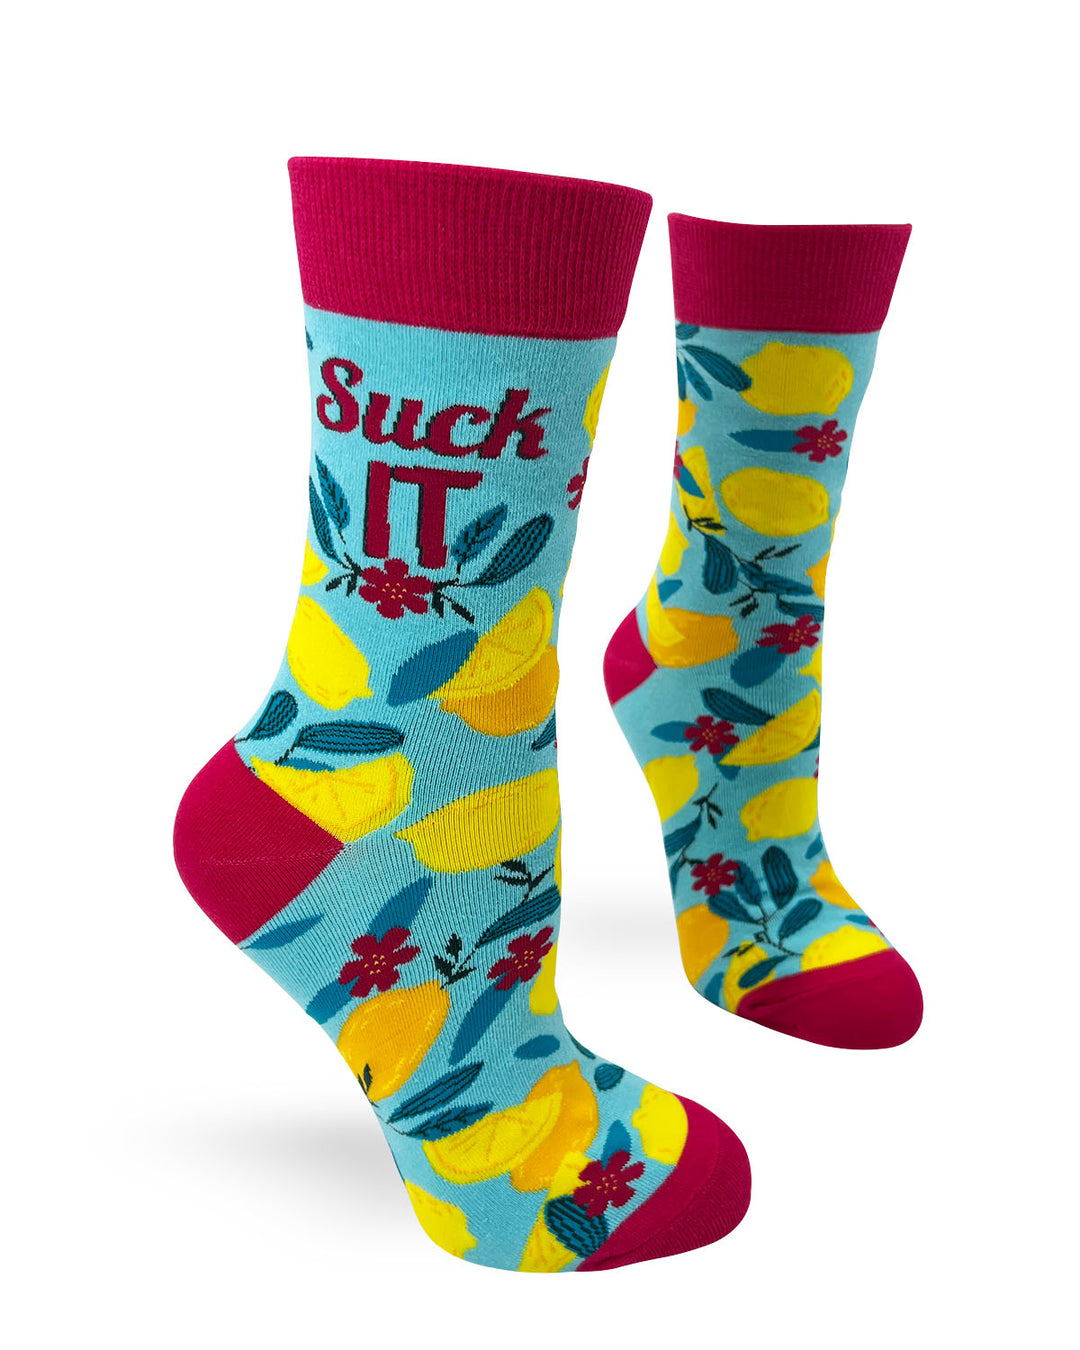 "Suck it" Women's Novelty Crew Socks